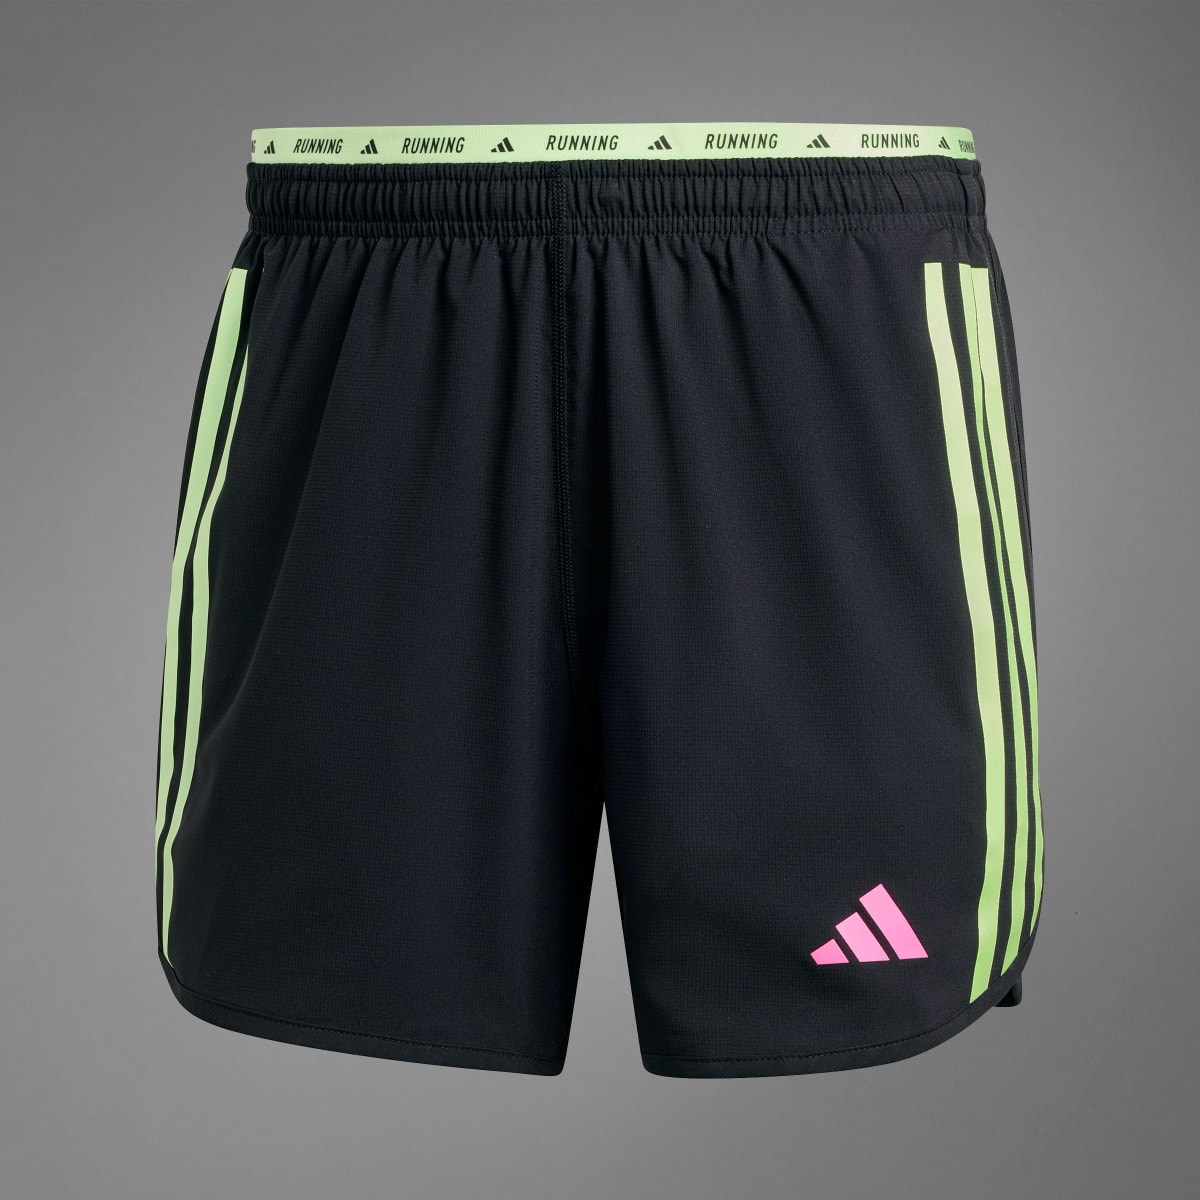 Adidas Own the Run 3-Streifen Shorts. 9